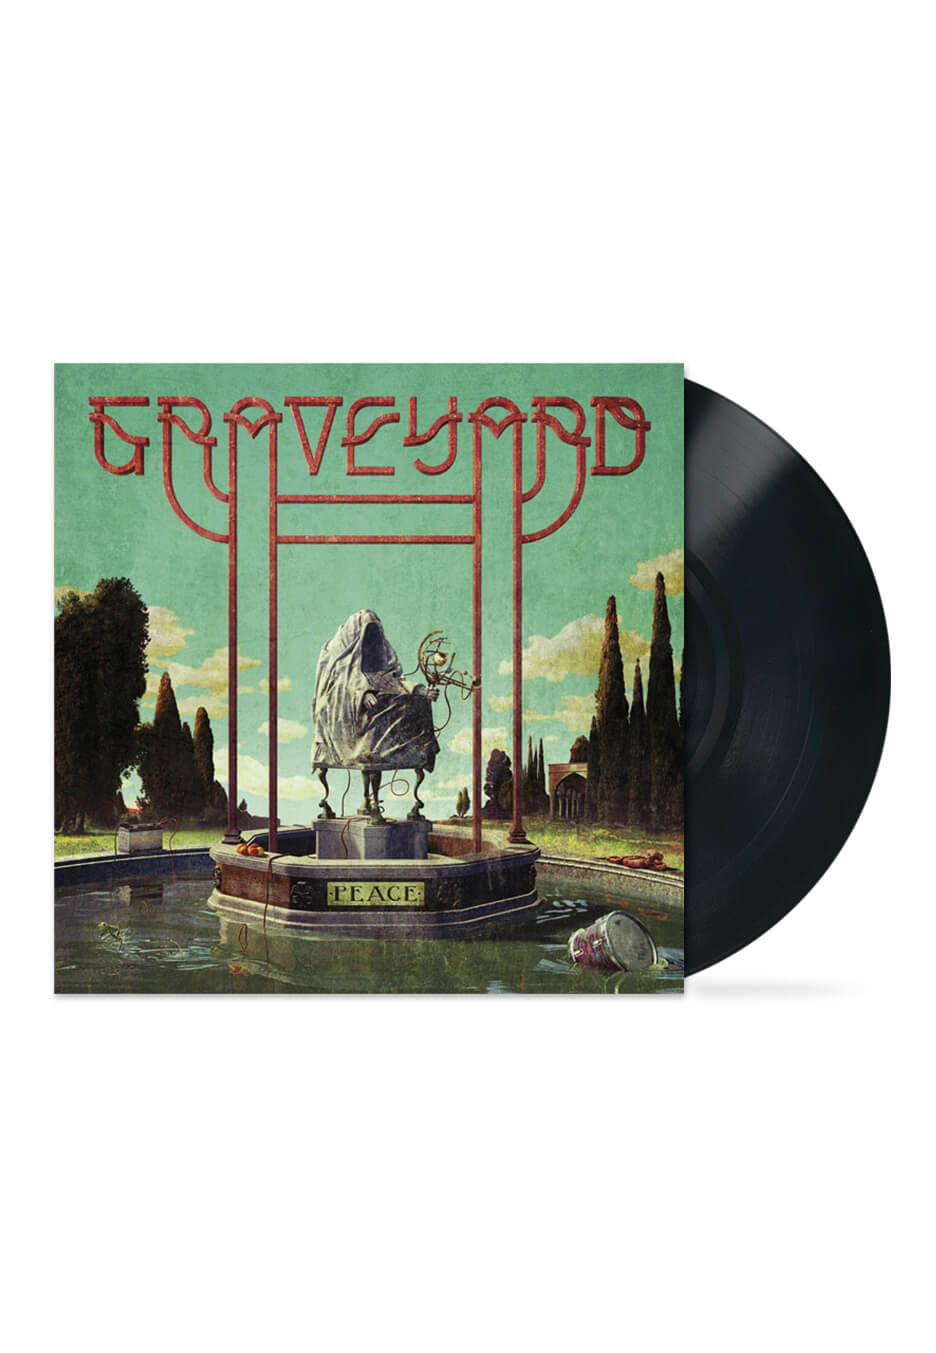 Graveyard - Peace - Vinyl